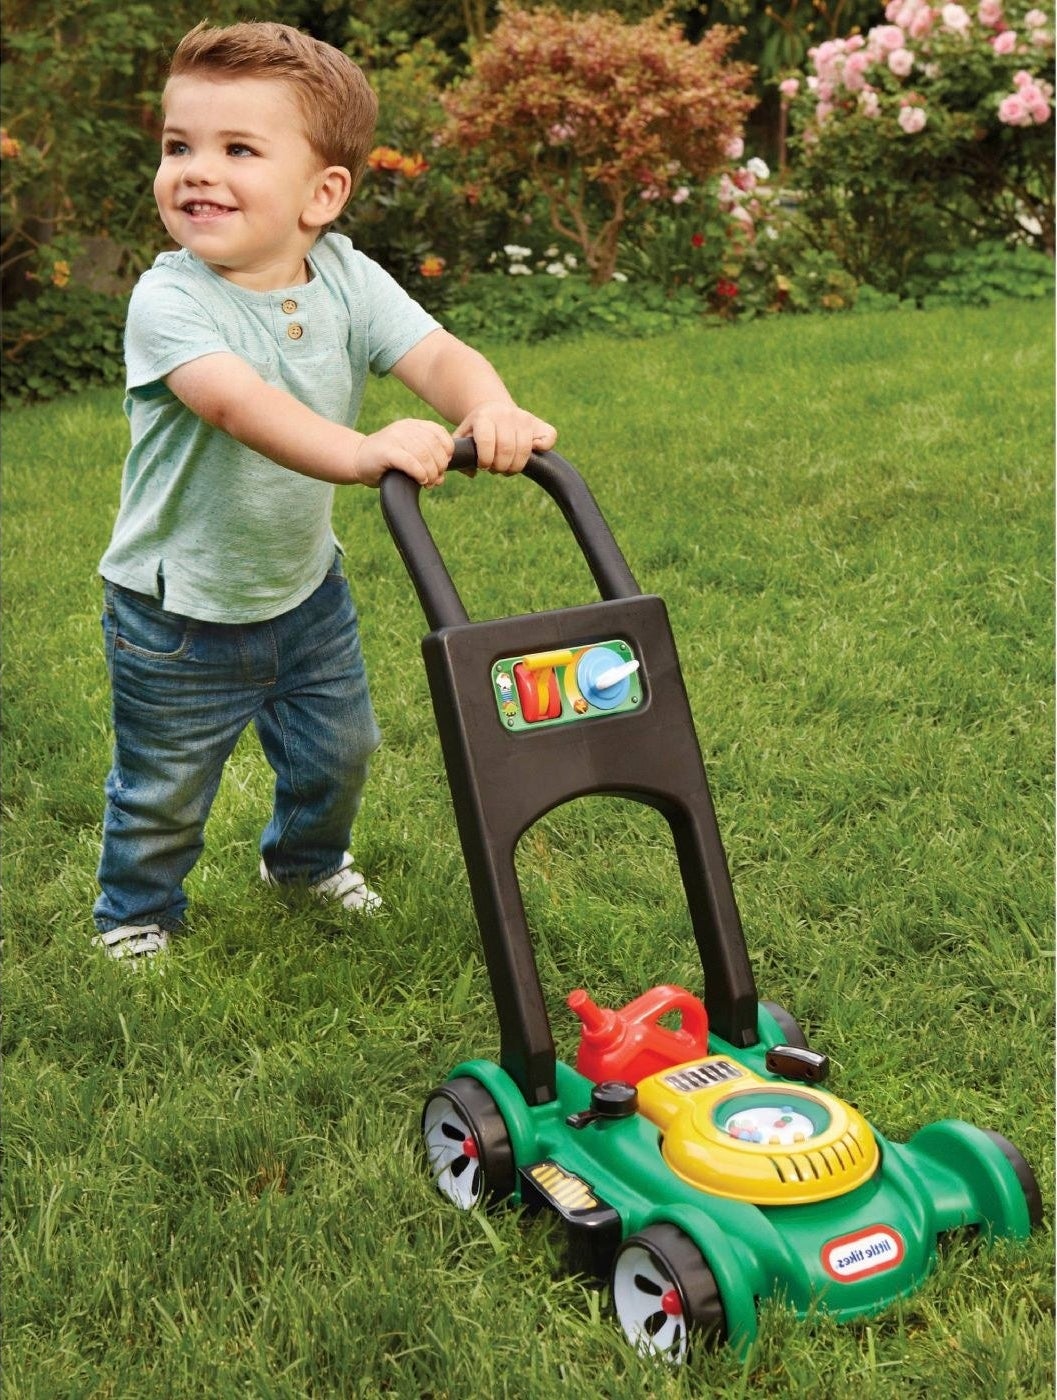 Kid pushing lawn mower